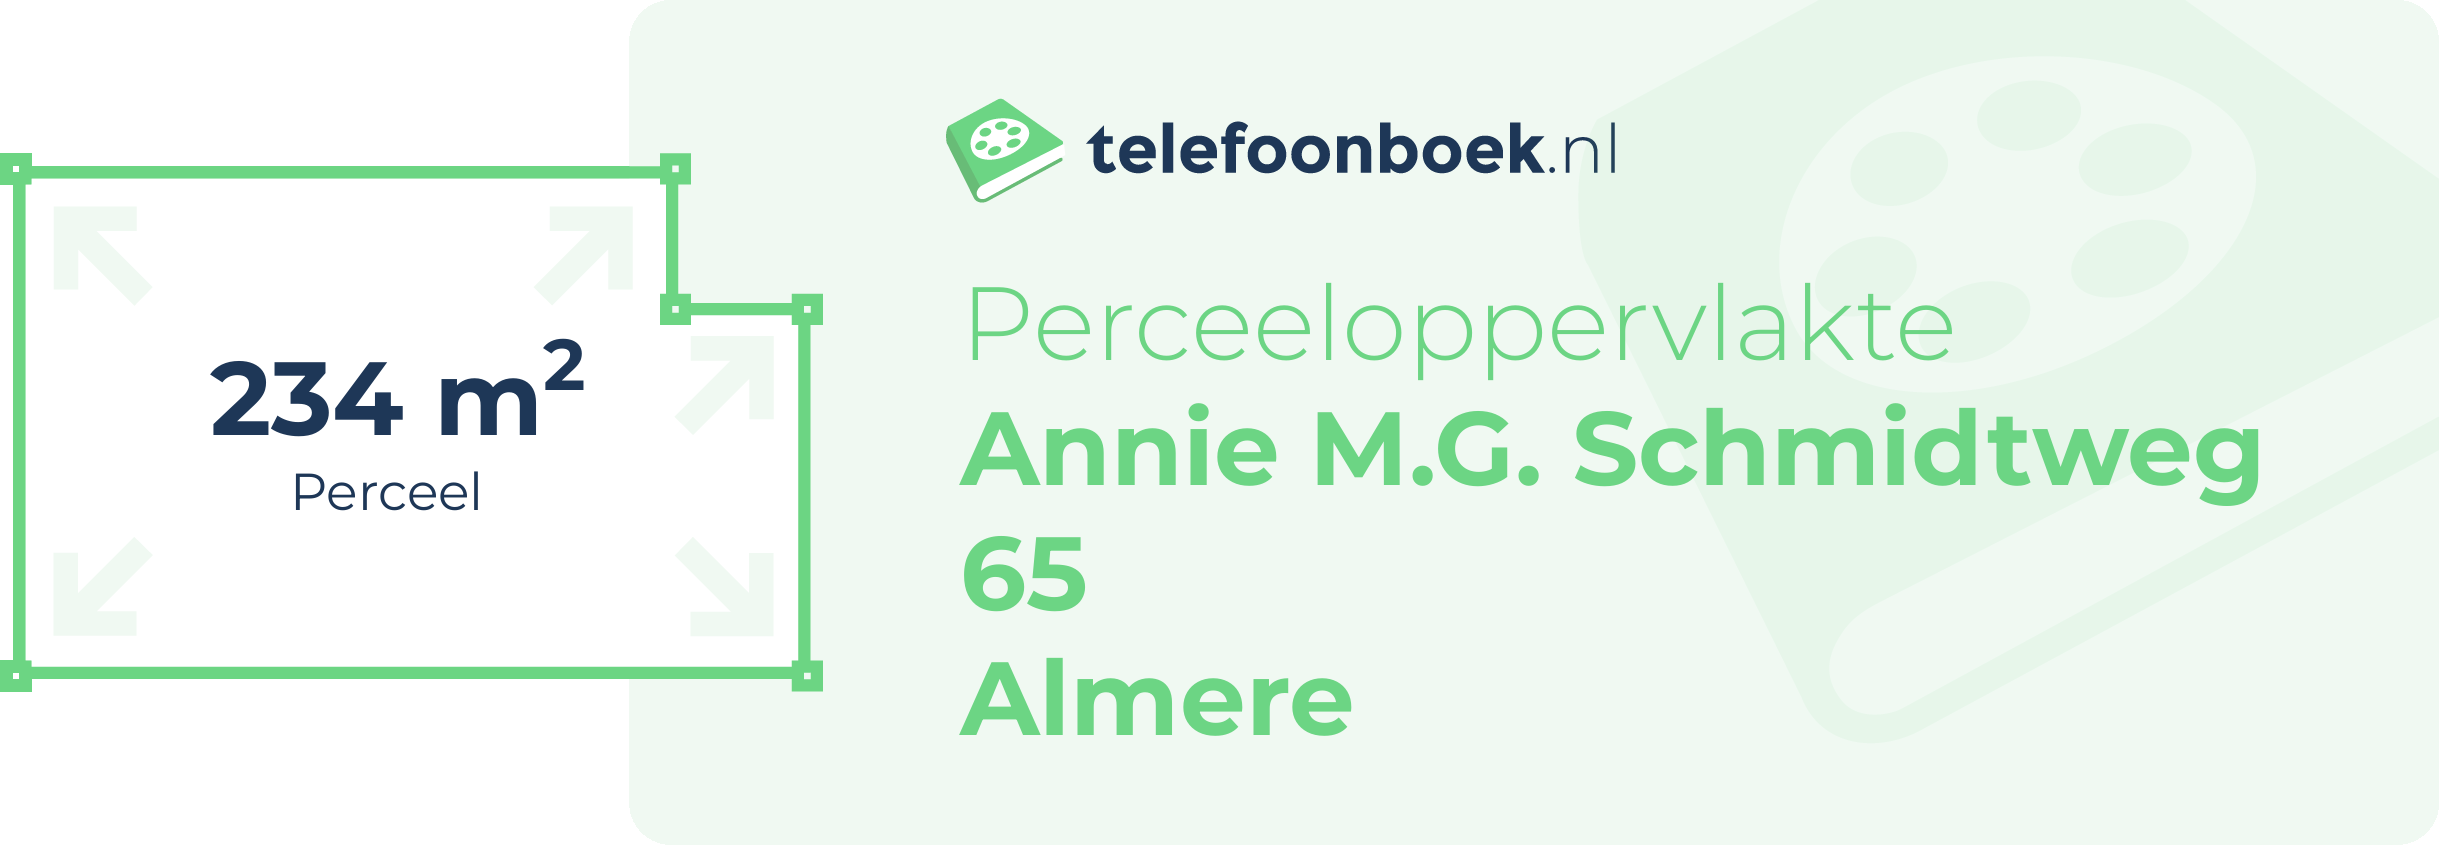 Perceeloppervlakte Annie M.G. Schmidtweg 65 Almere